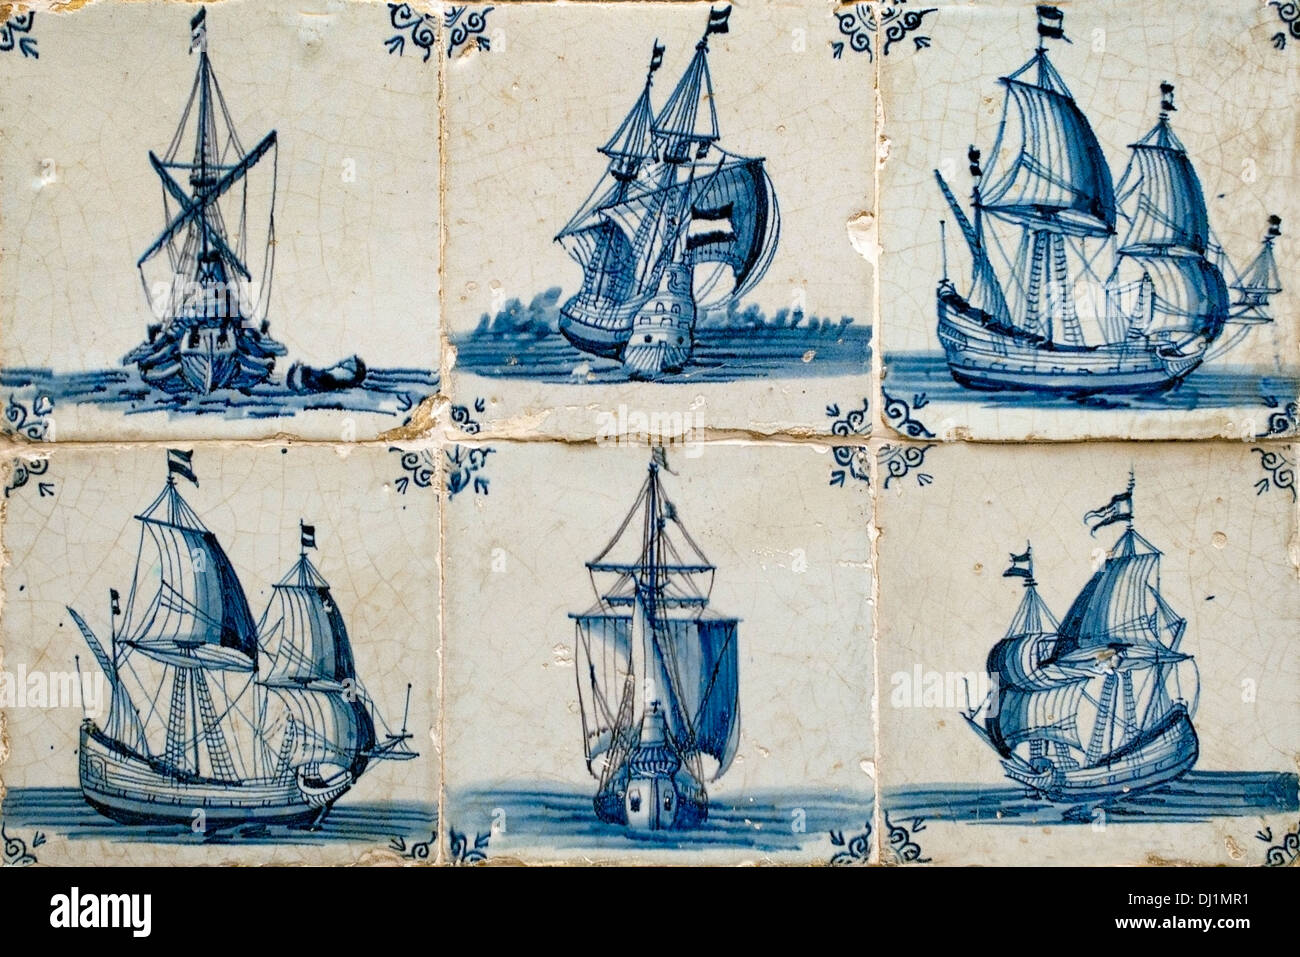 Segeln Schiff Boot holländischen Fliesen blau Fliese 17. Jahrhundert Niederlande Holland Museum Stockfoto